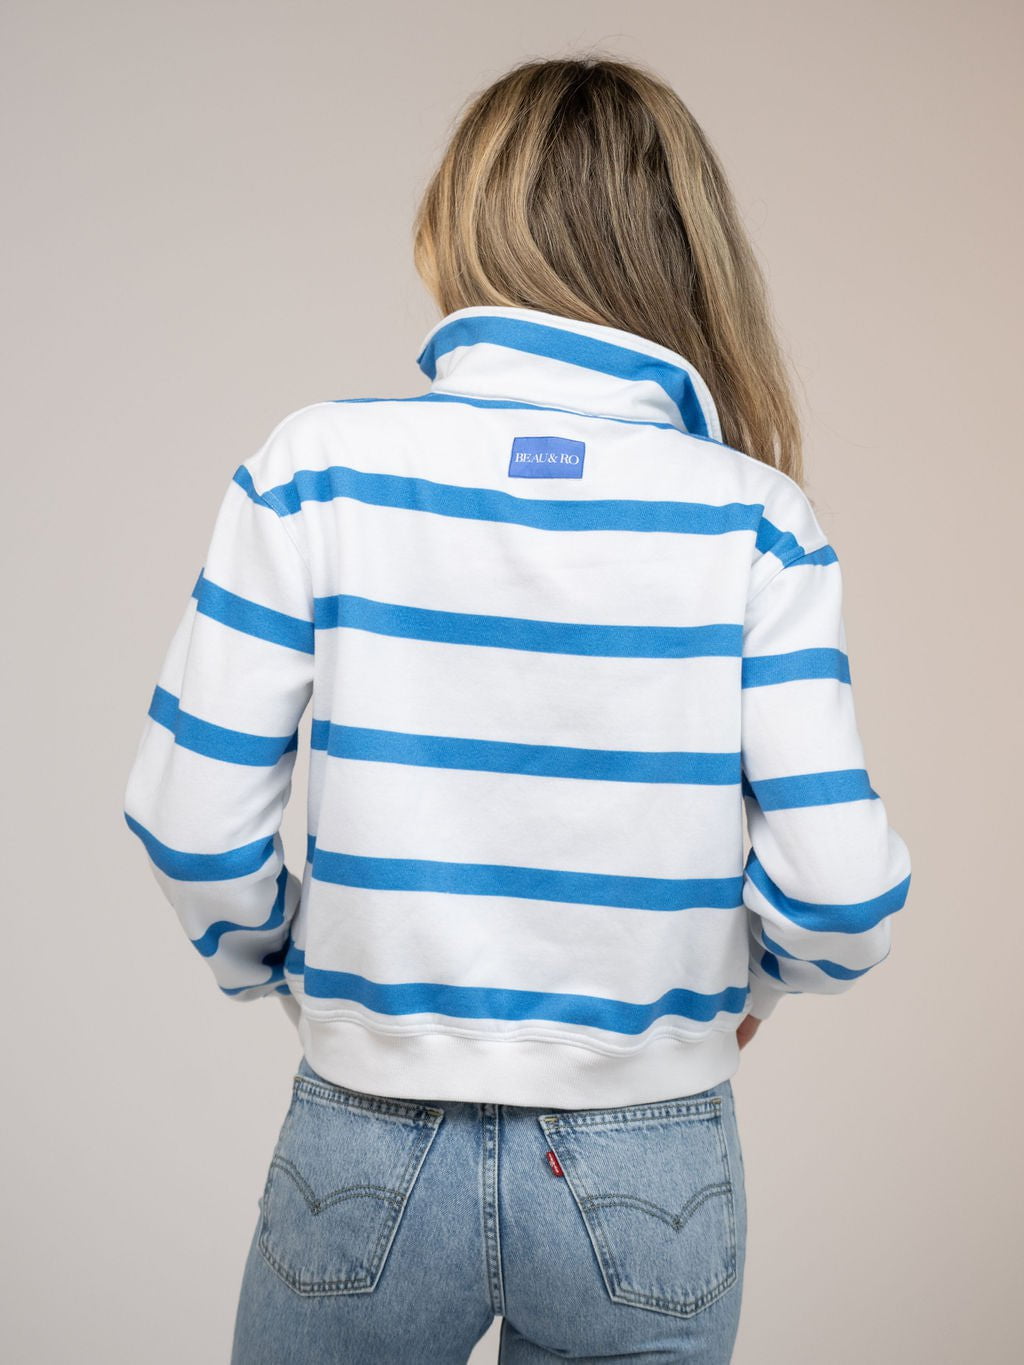 Beau & Ro Sweater Nantucket Half Zip in Blue Stripes